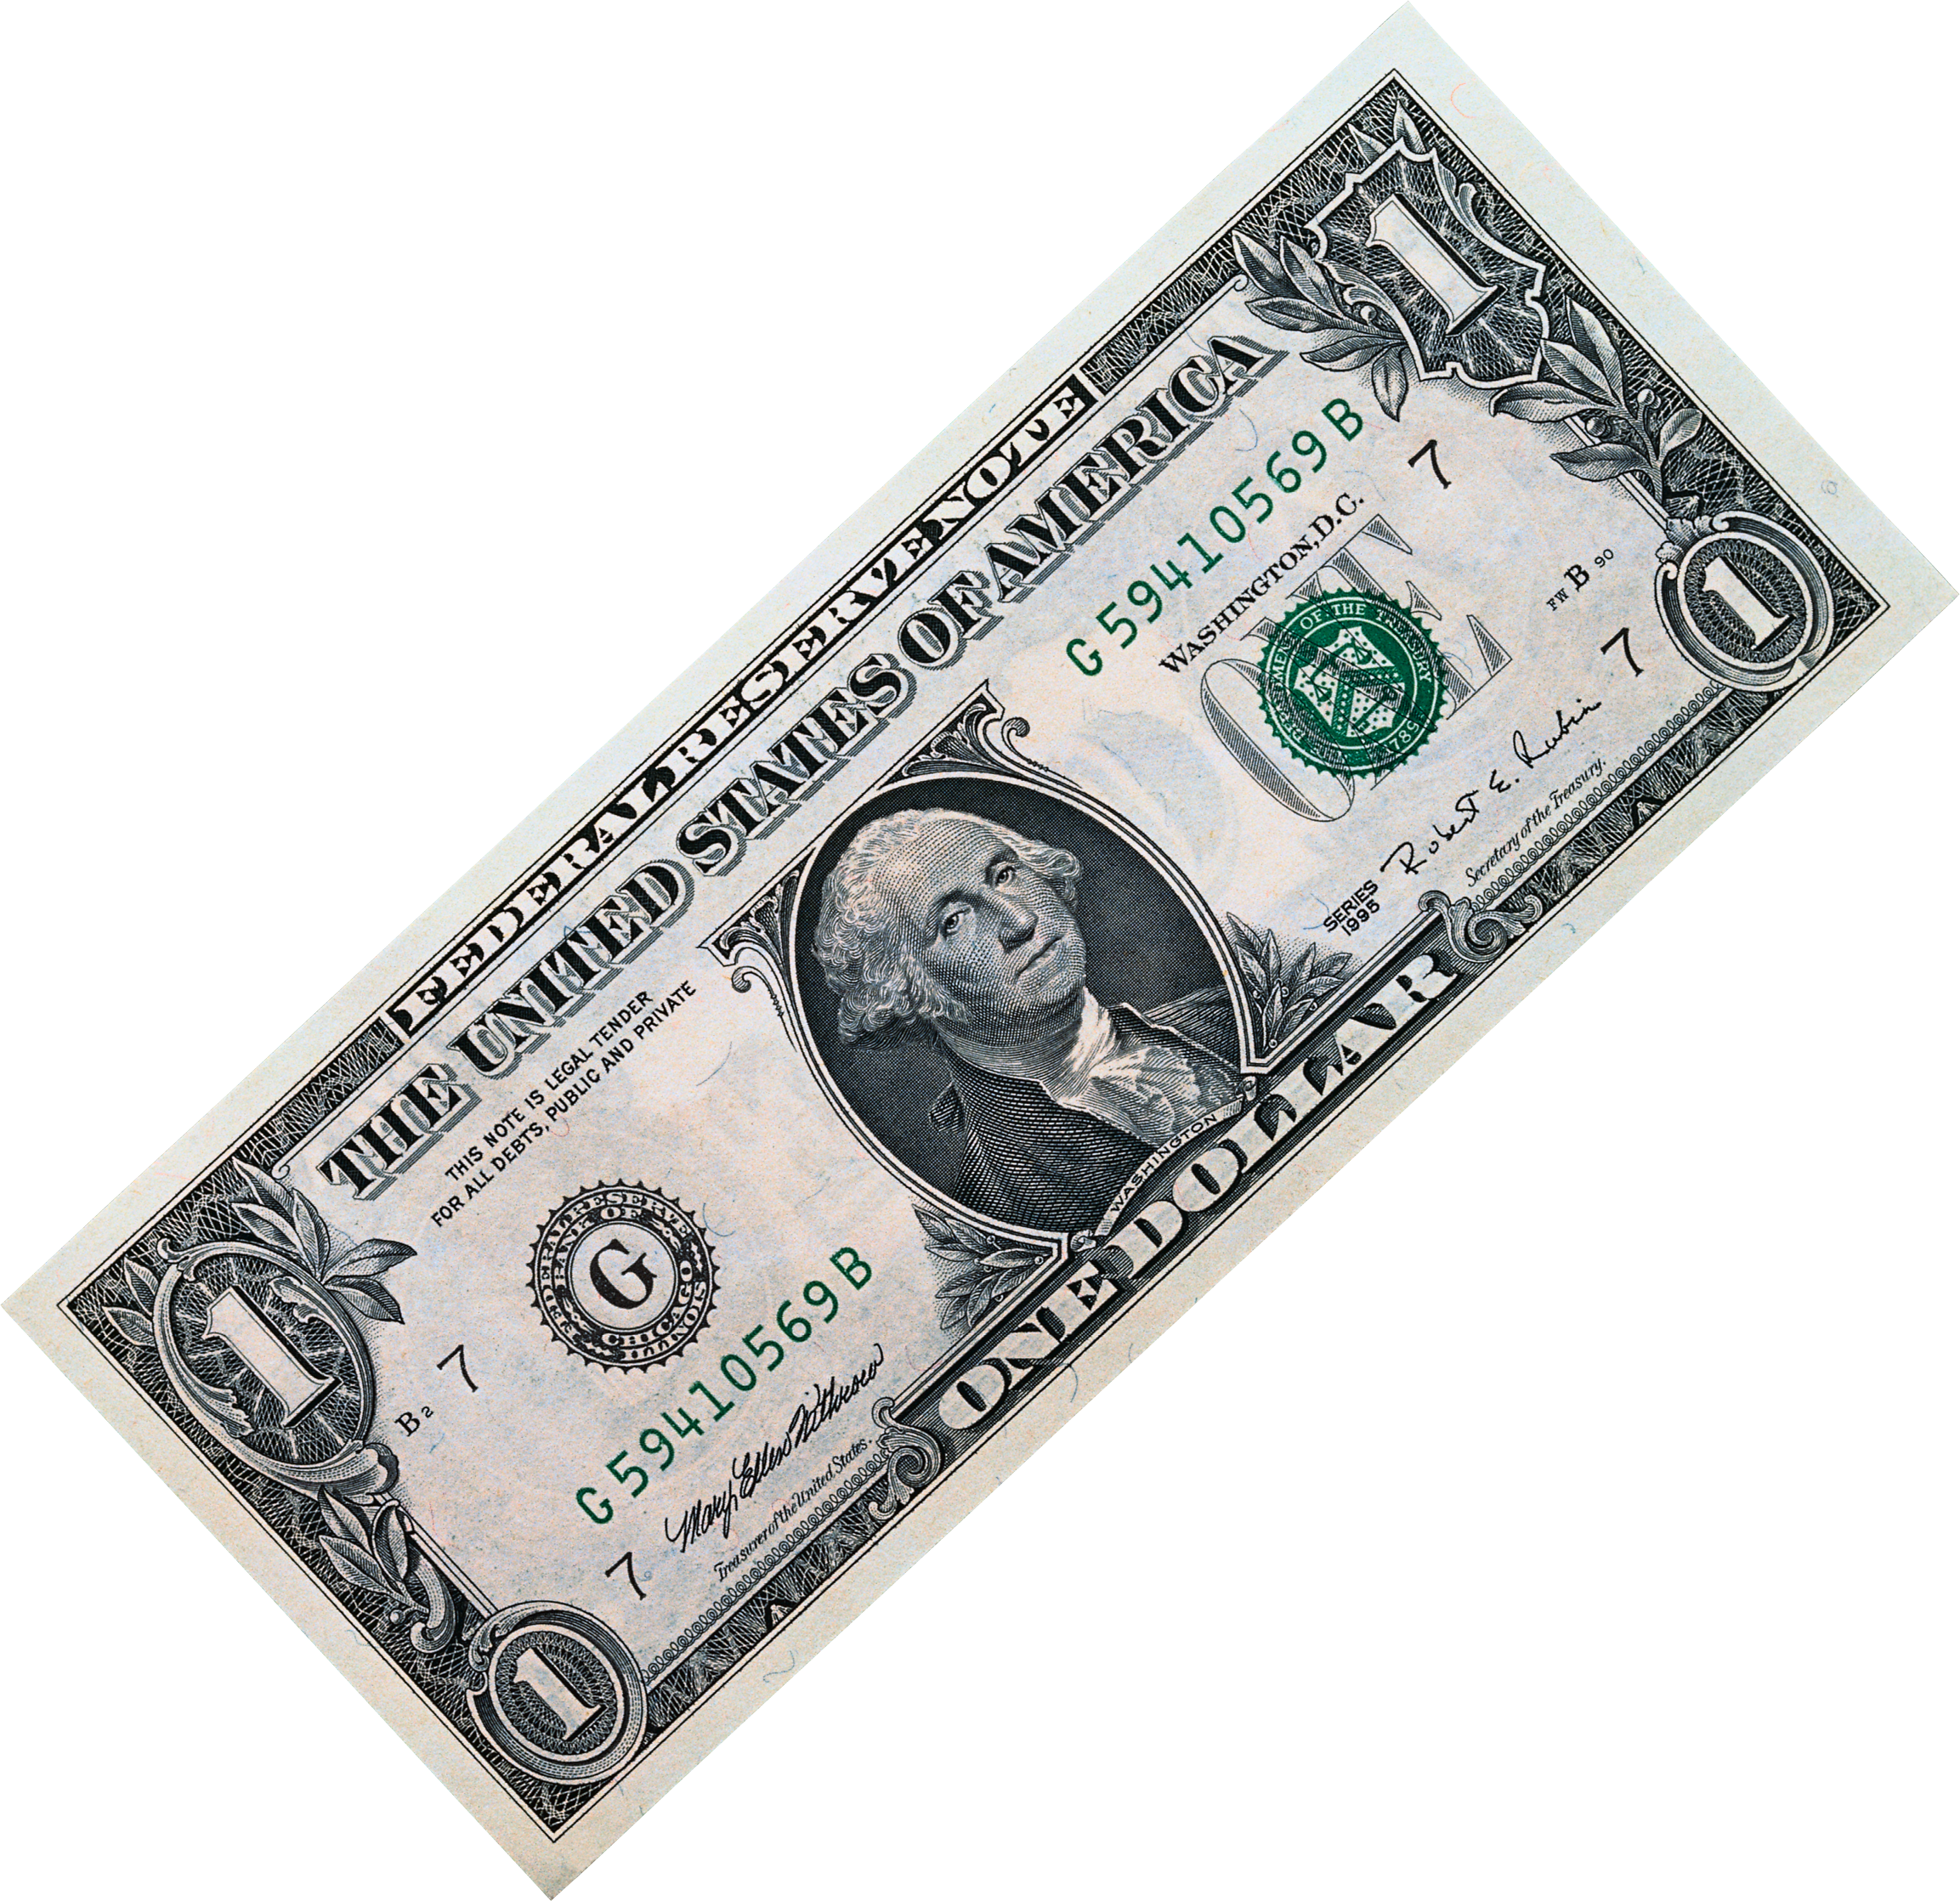 Прозрачная купюра. Деньги доллары. Изображение долларовых купюр. Долларовая купюра на белом фоне. Доллар на прозрачном фоне.